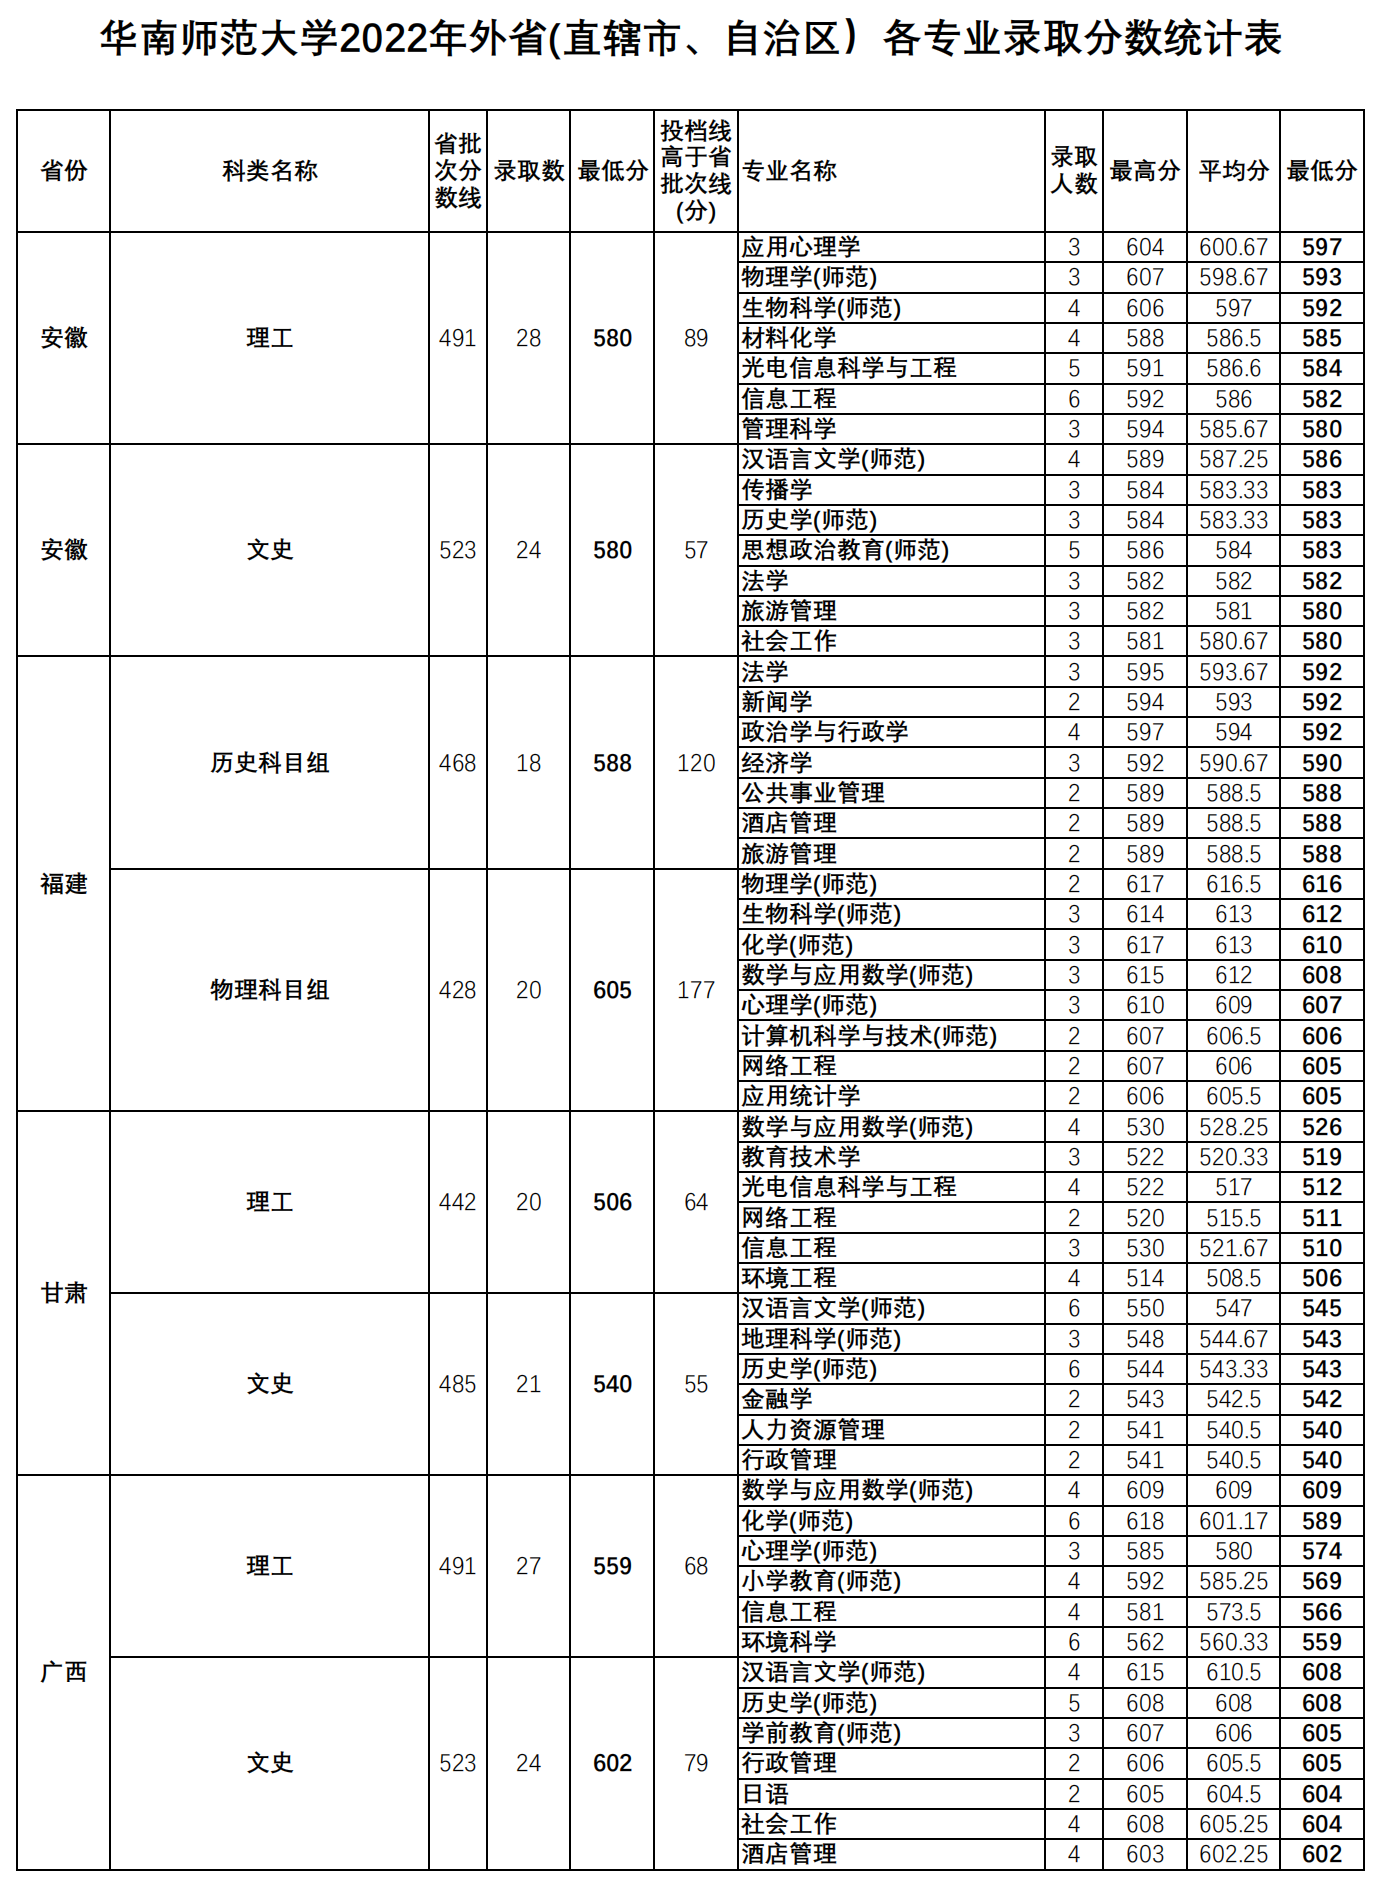 华南师范大学2022年外省(直辖市、自治区）各专业录取分数统计表